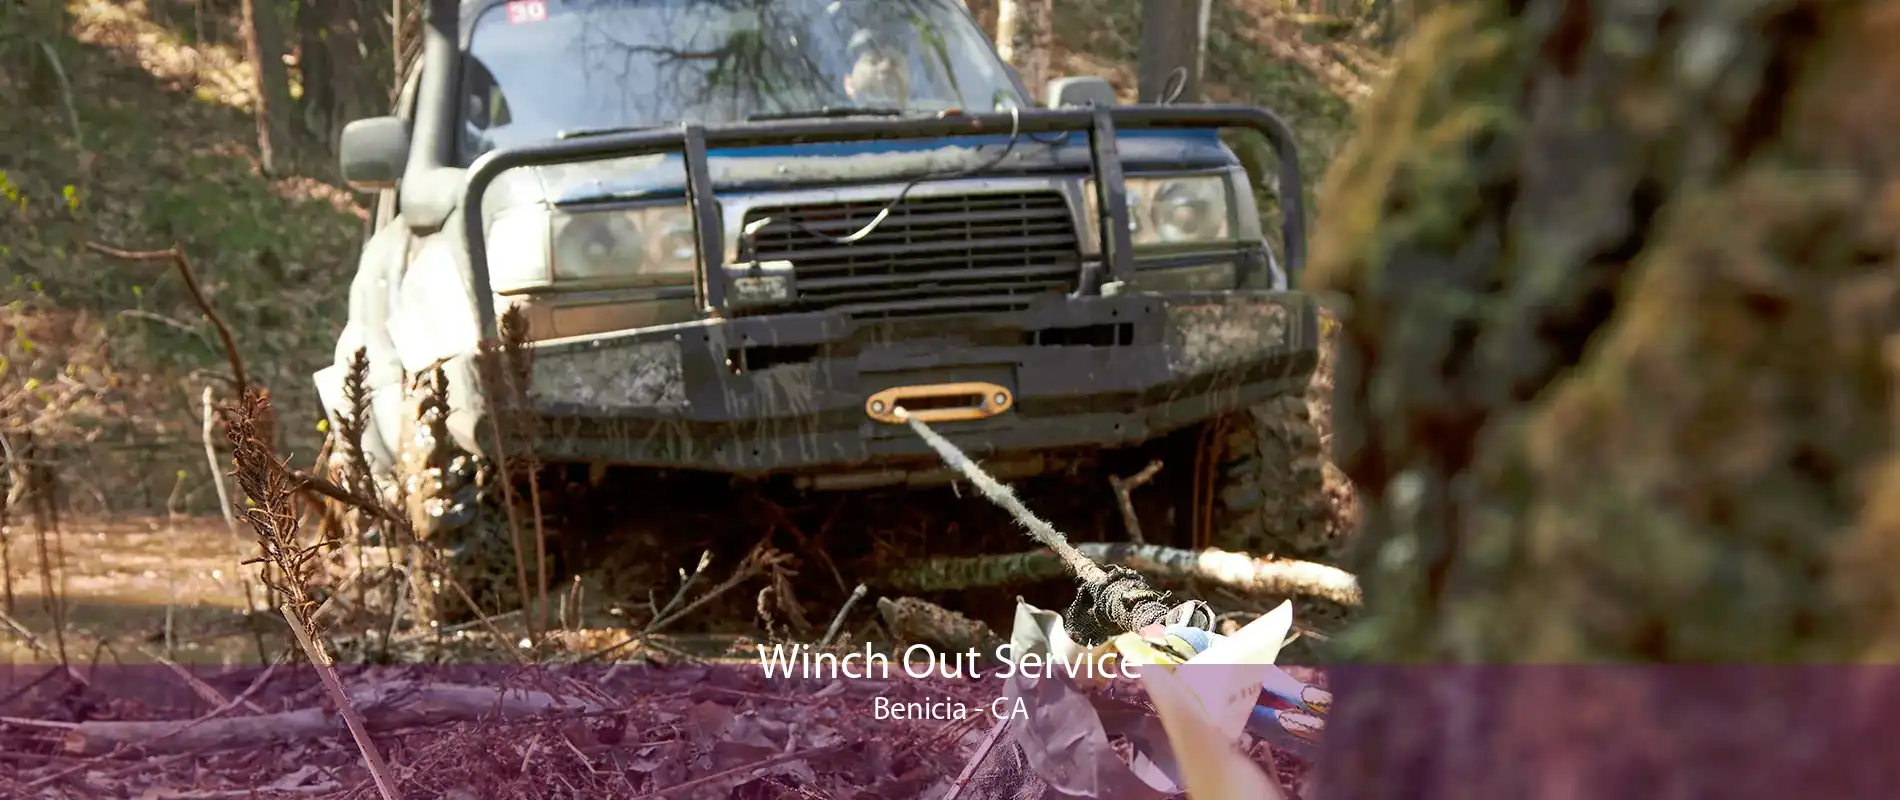 Winch Out Service Benicia - CA